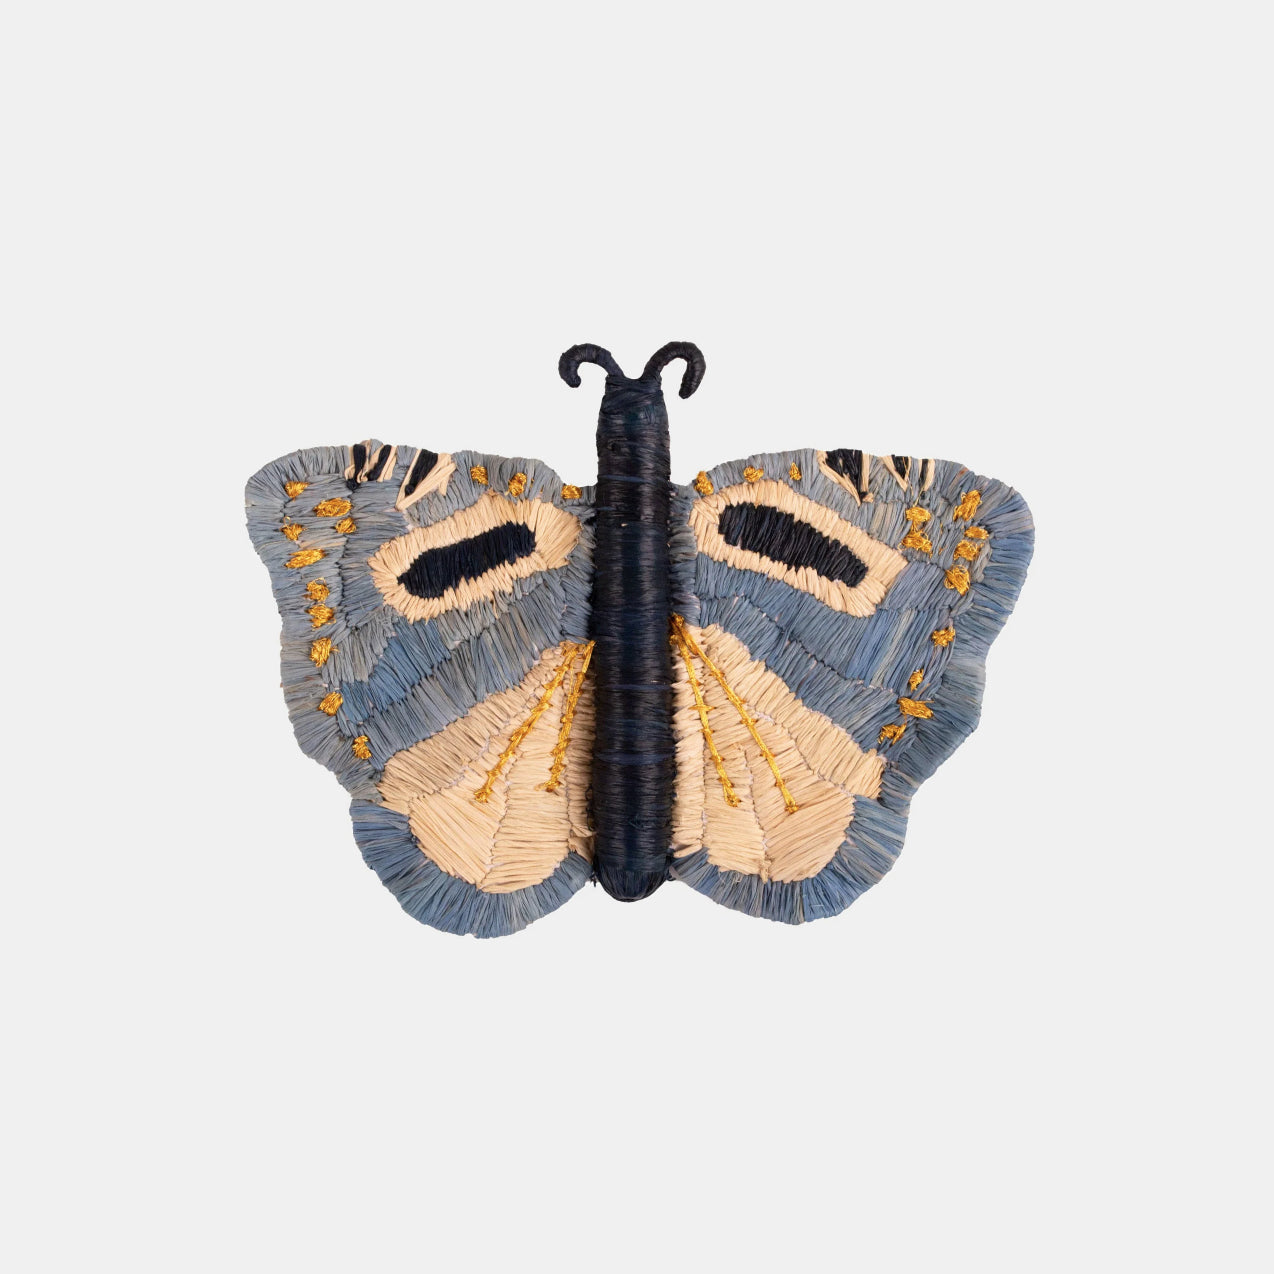 Coastal Butterfly Woven Figurine